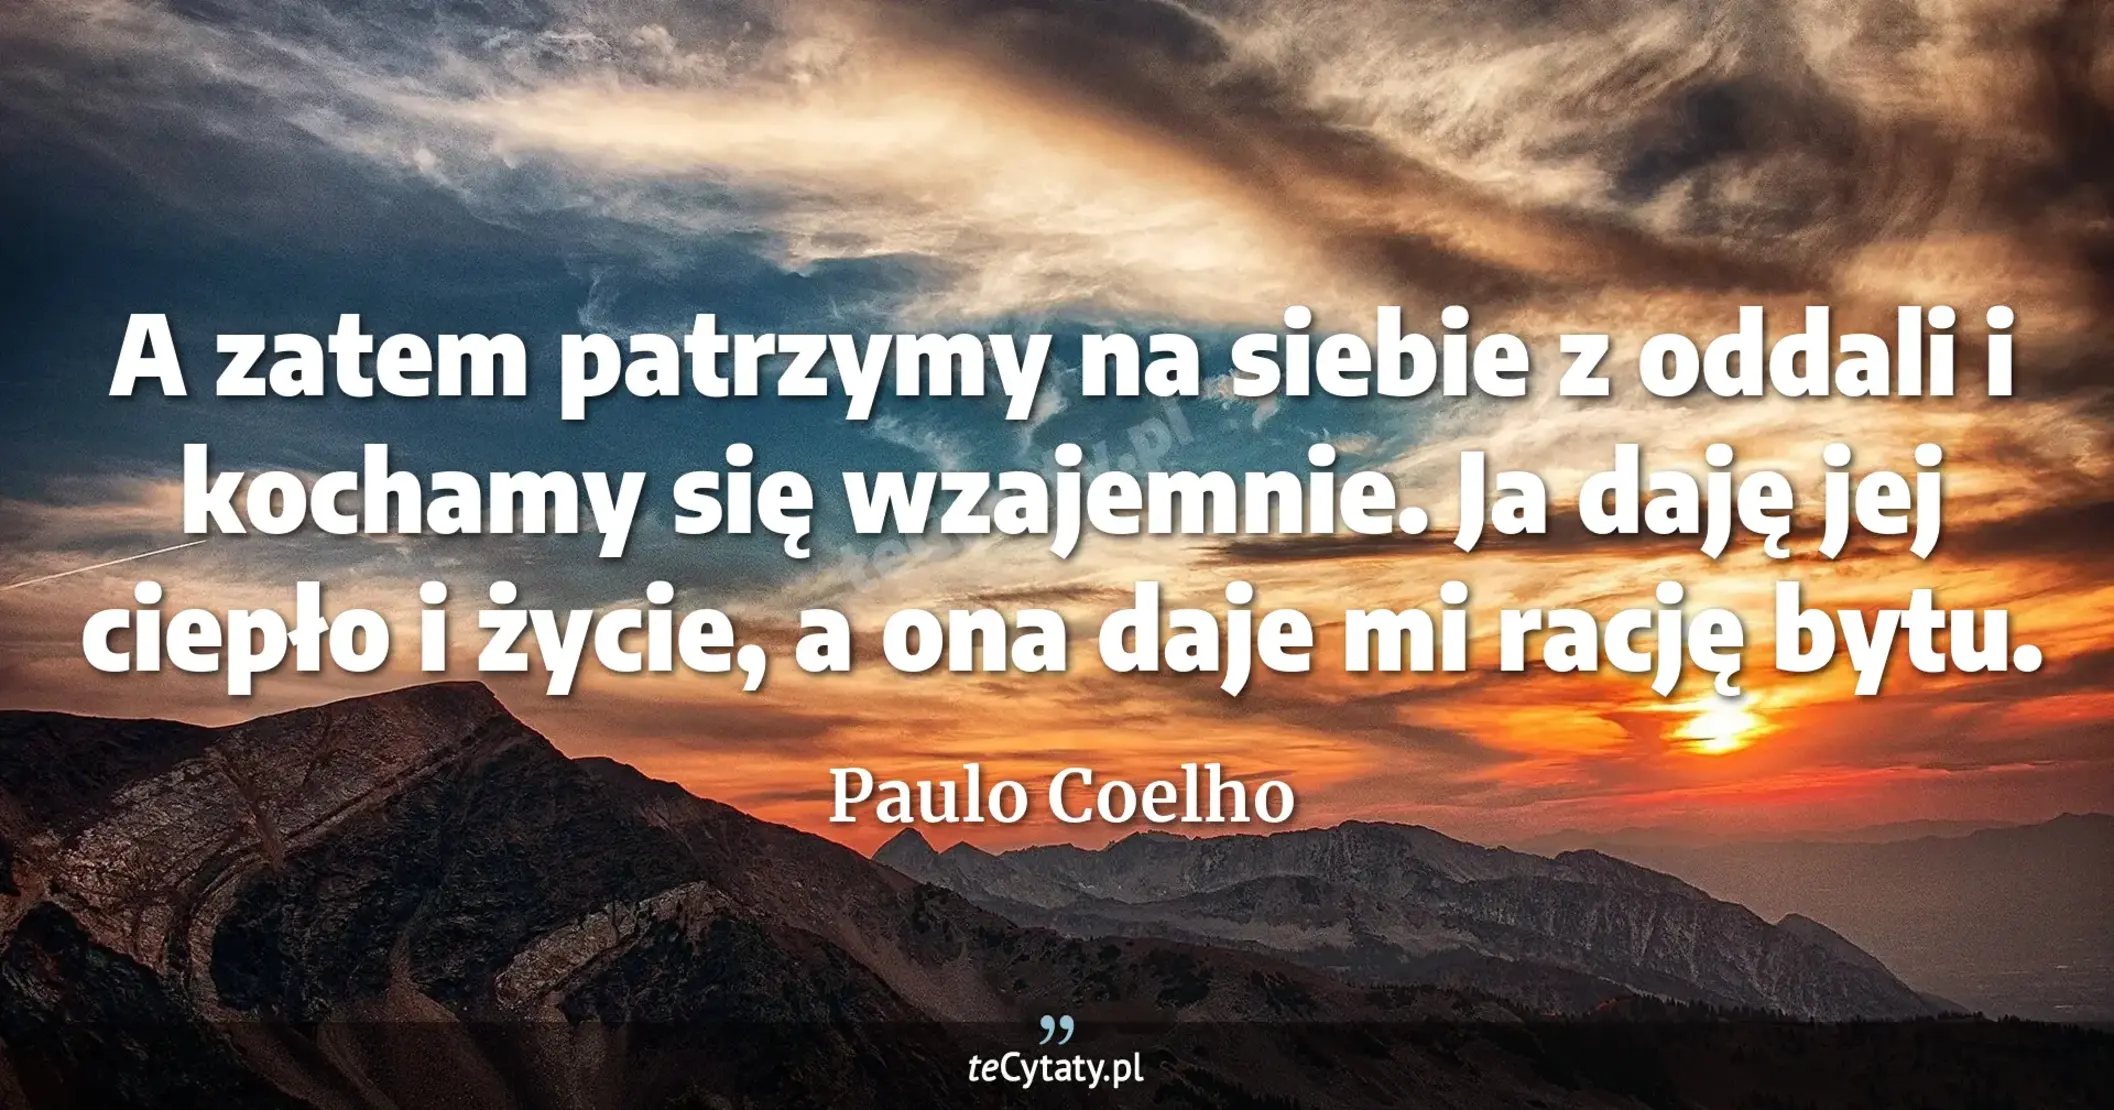 A zatem patrzymy na siebie z oddali i kochamy się wzajemnie. Ja daję jej ciepło i życie, a ona daje mi rację bytu. - Paulo Coelho